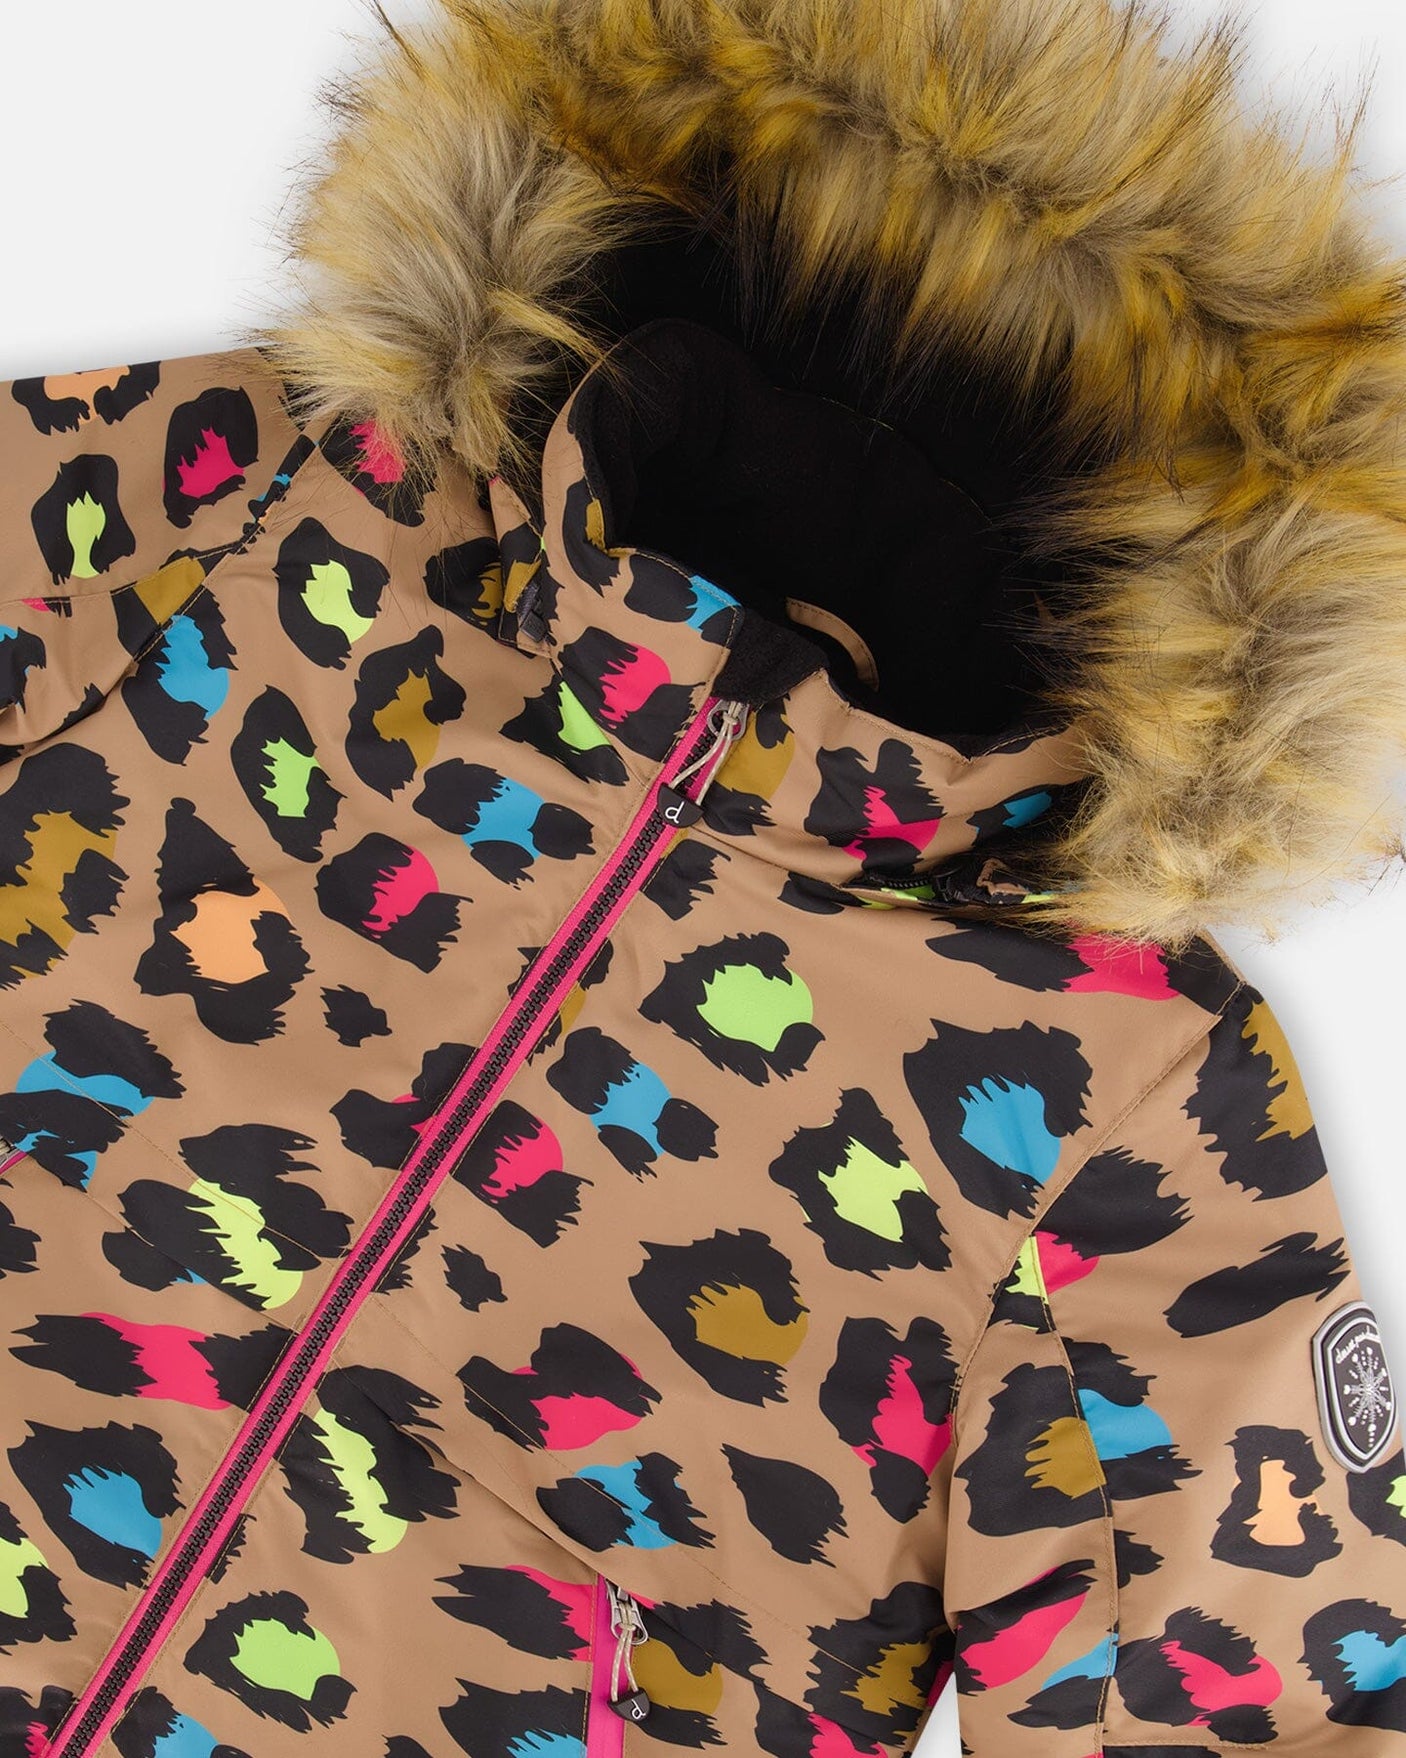 Two Piece Snowsuit Multicolor Leopard Print - Jenni Kidz